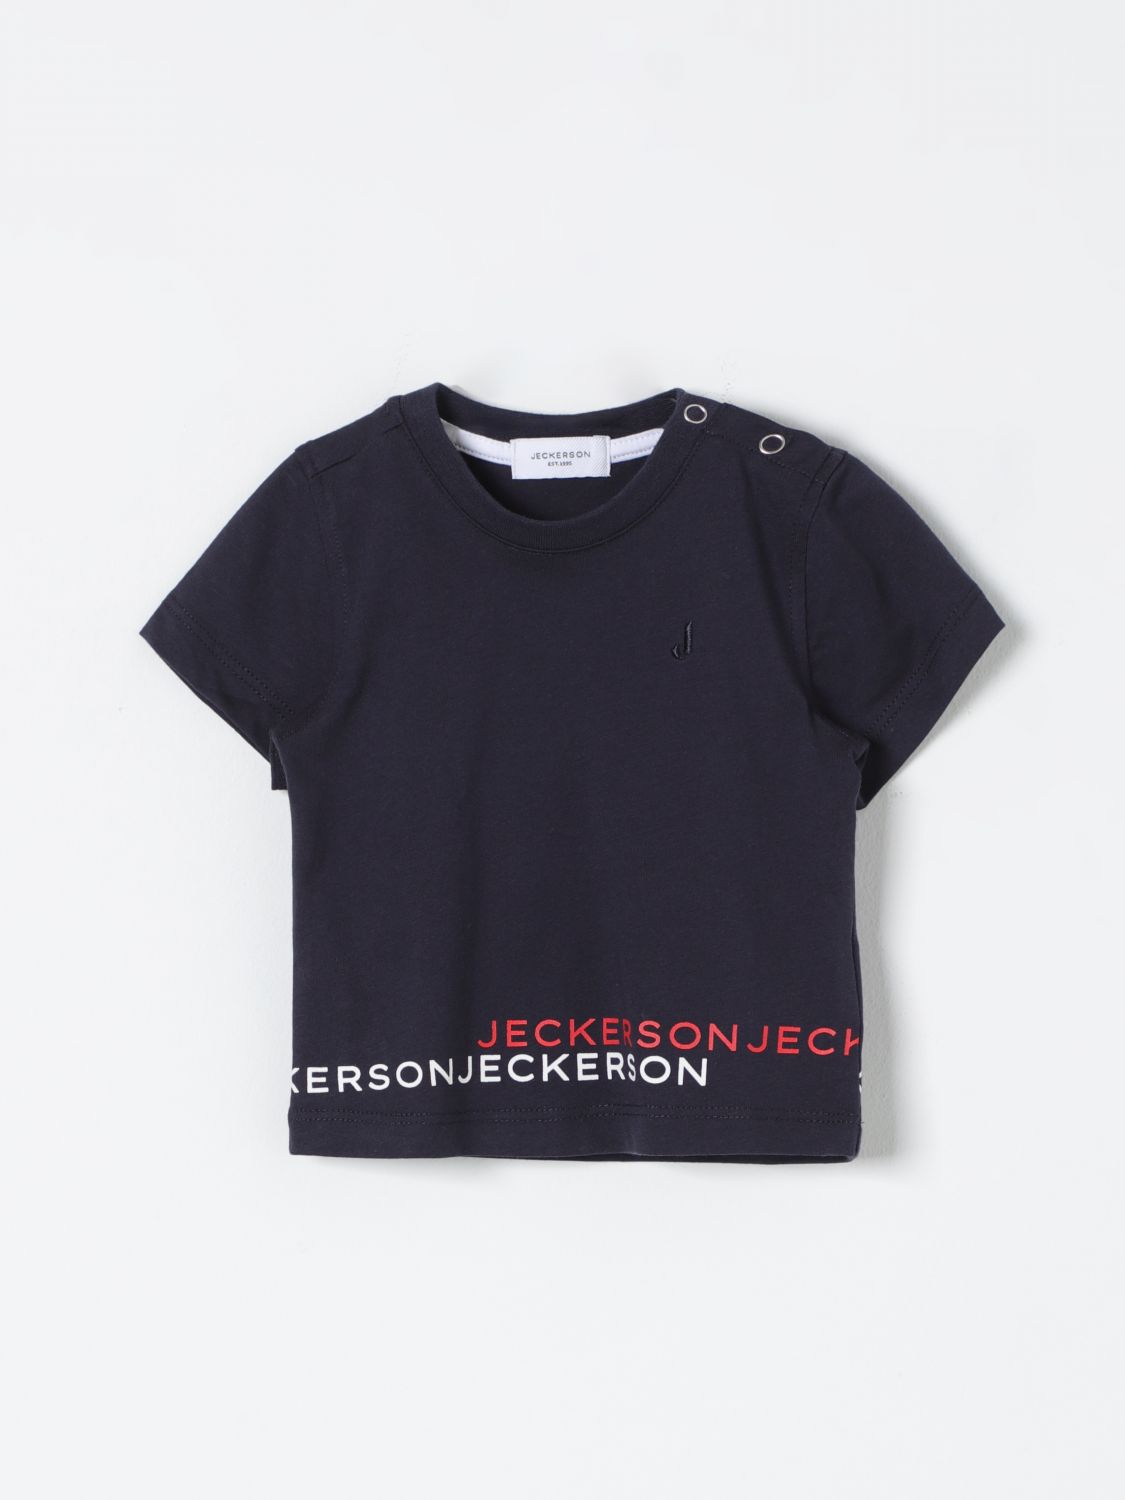 Jeckerson Babies' T-shirt  Kids Color Blue